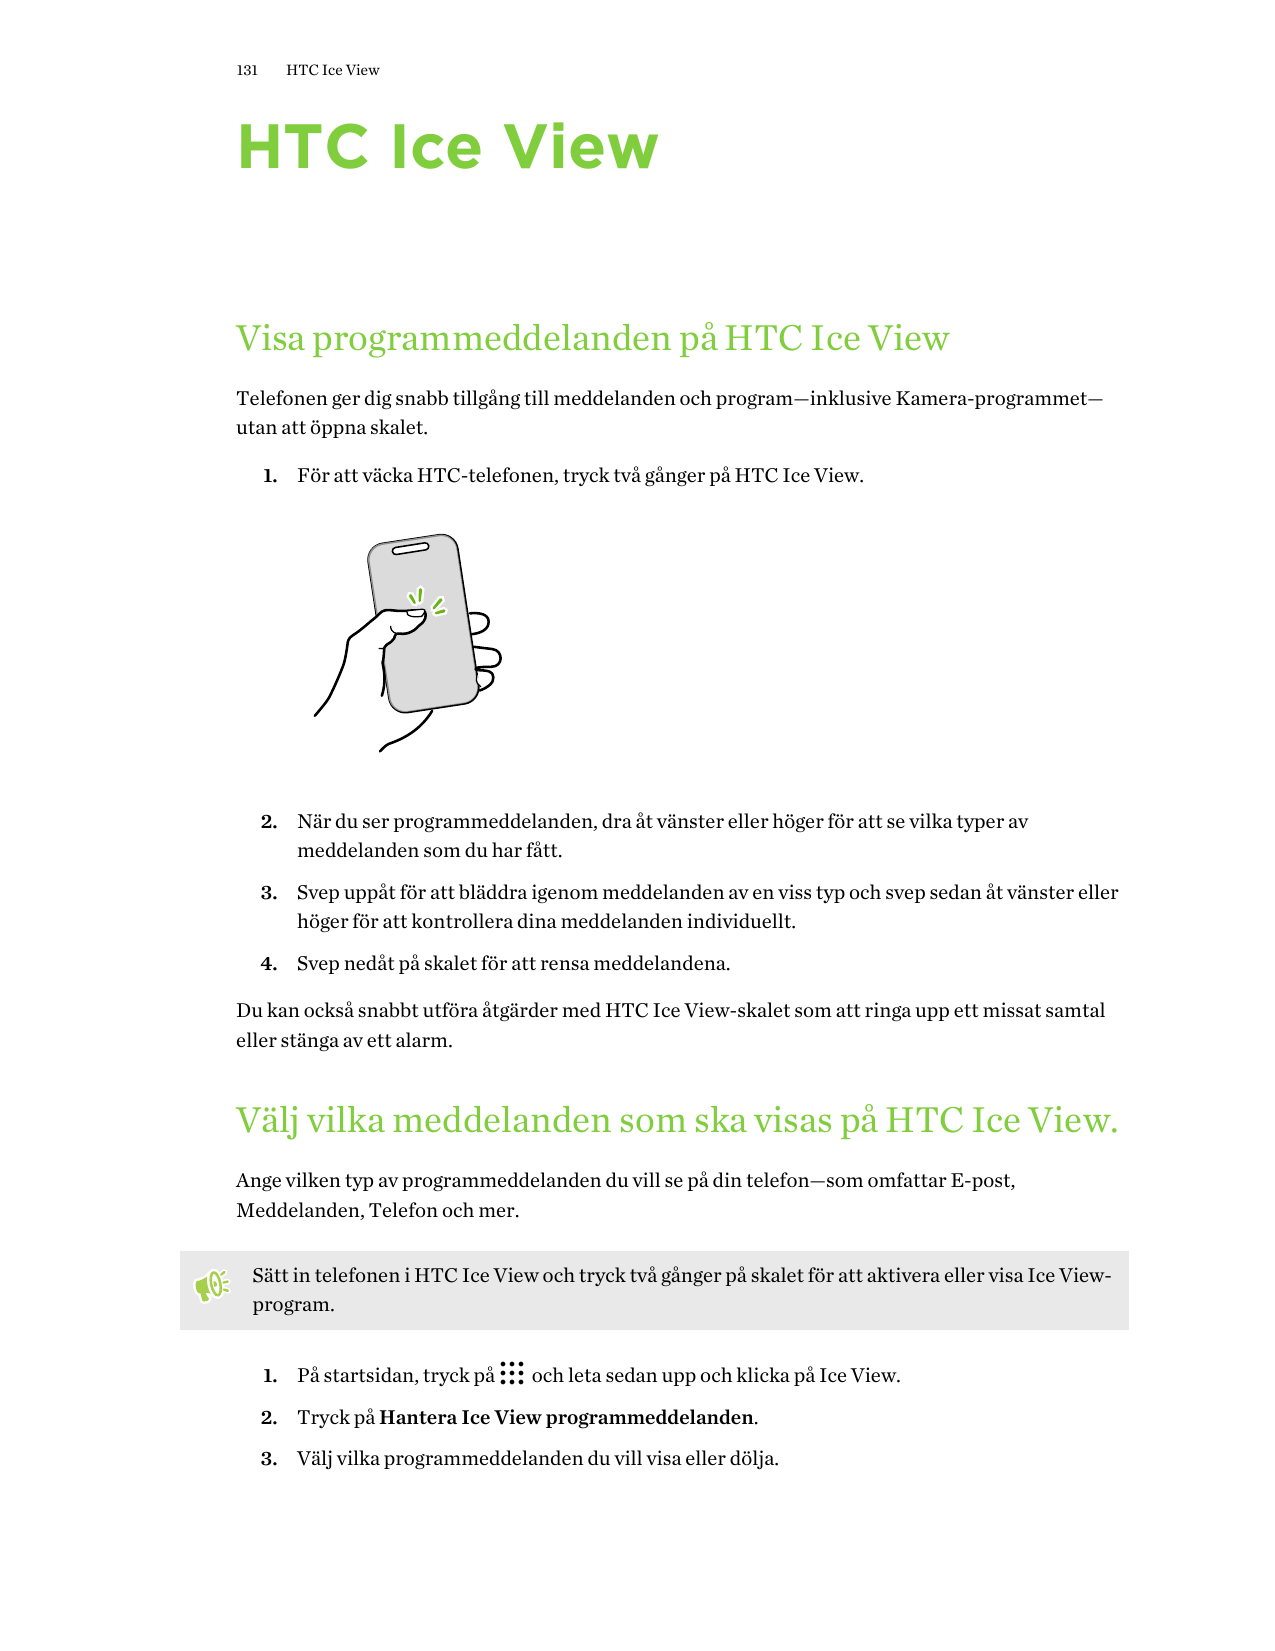 131HTC Ice ViewHTC Ice ViewVisa programmeddelanden på HTC Ice ViewTelefonen ger dig snabb tillgång till meddelanden och program—